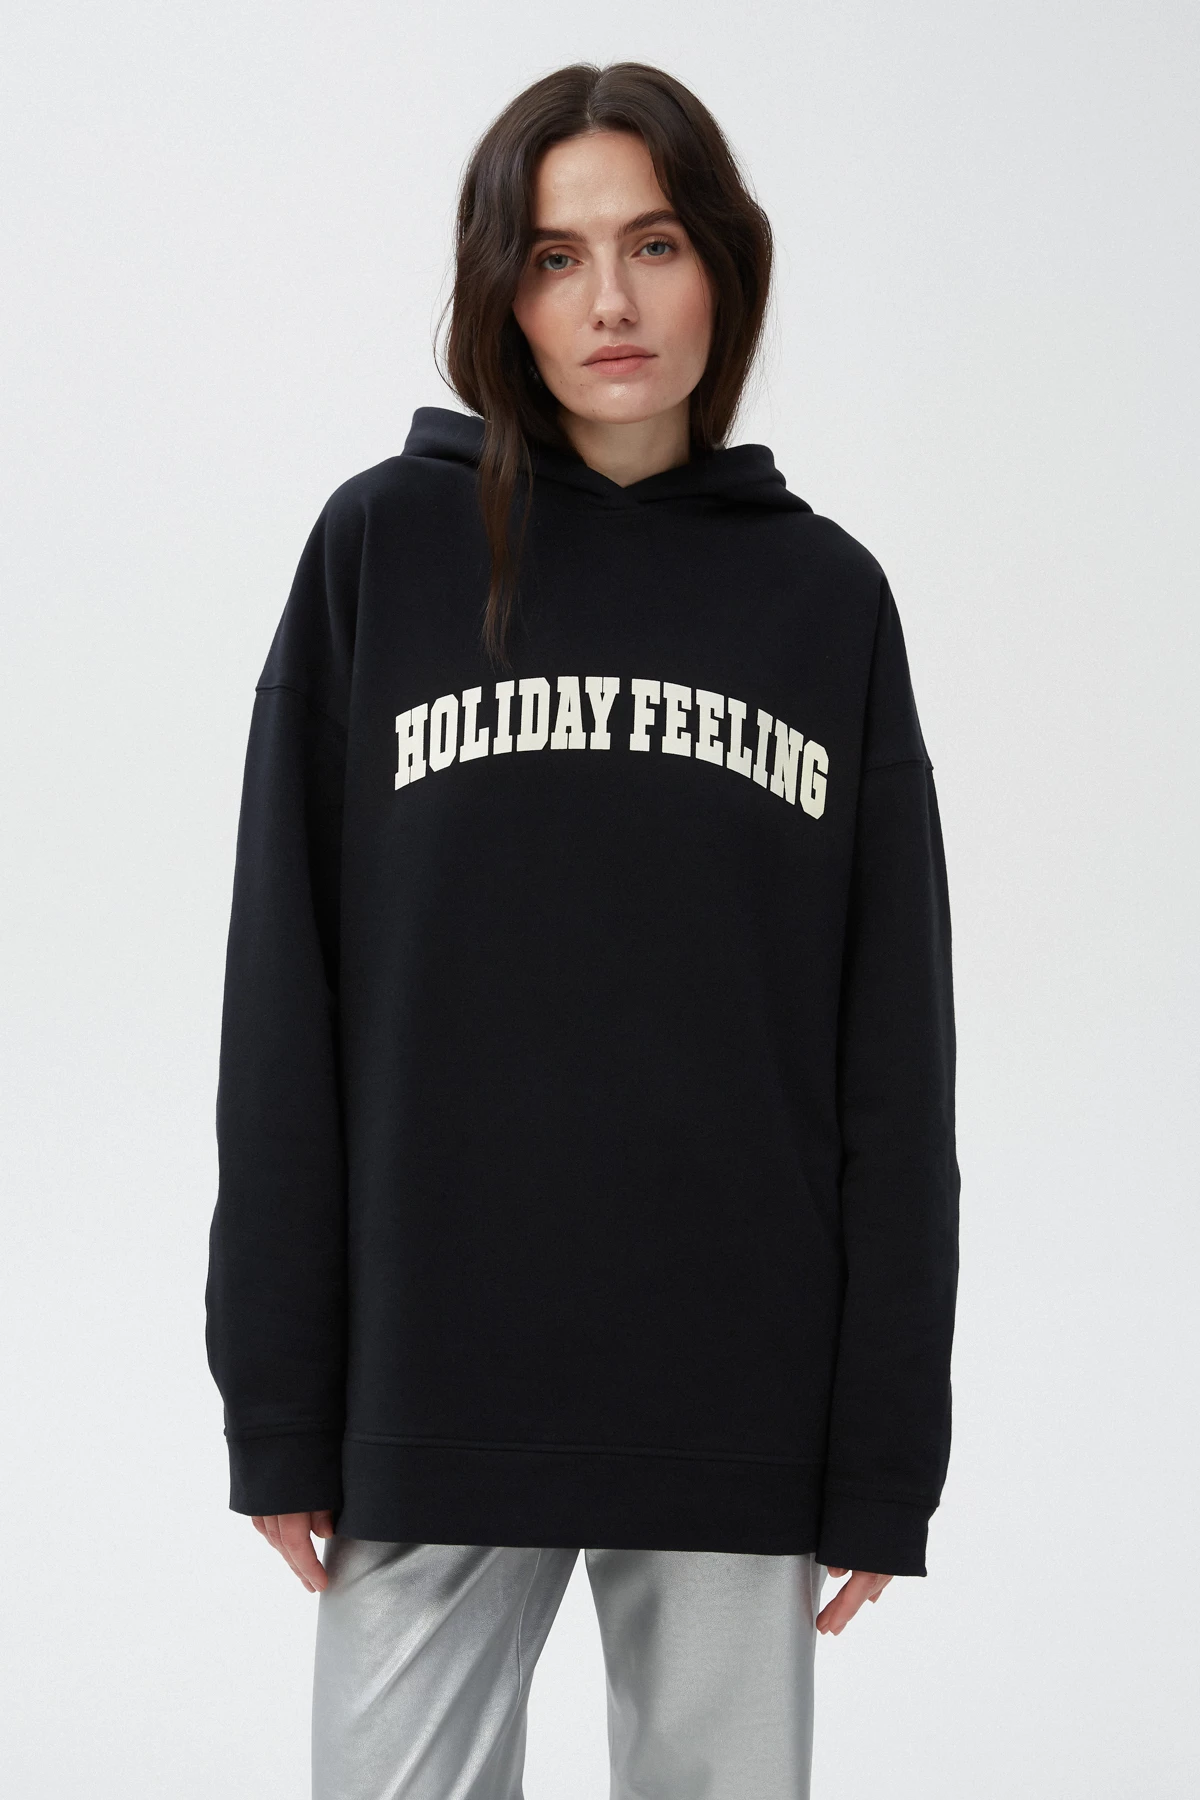 Black unisex hoodie "Holiday feeling" on fleece, photo 5